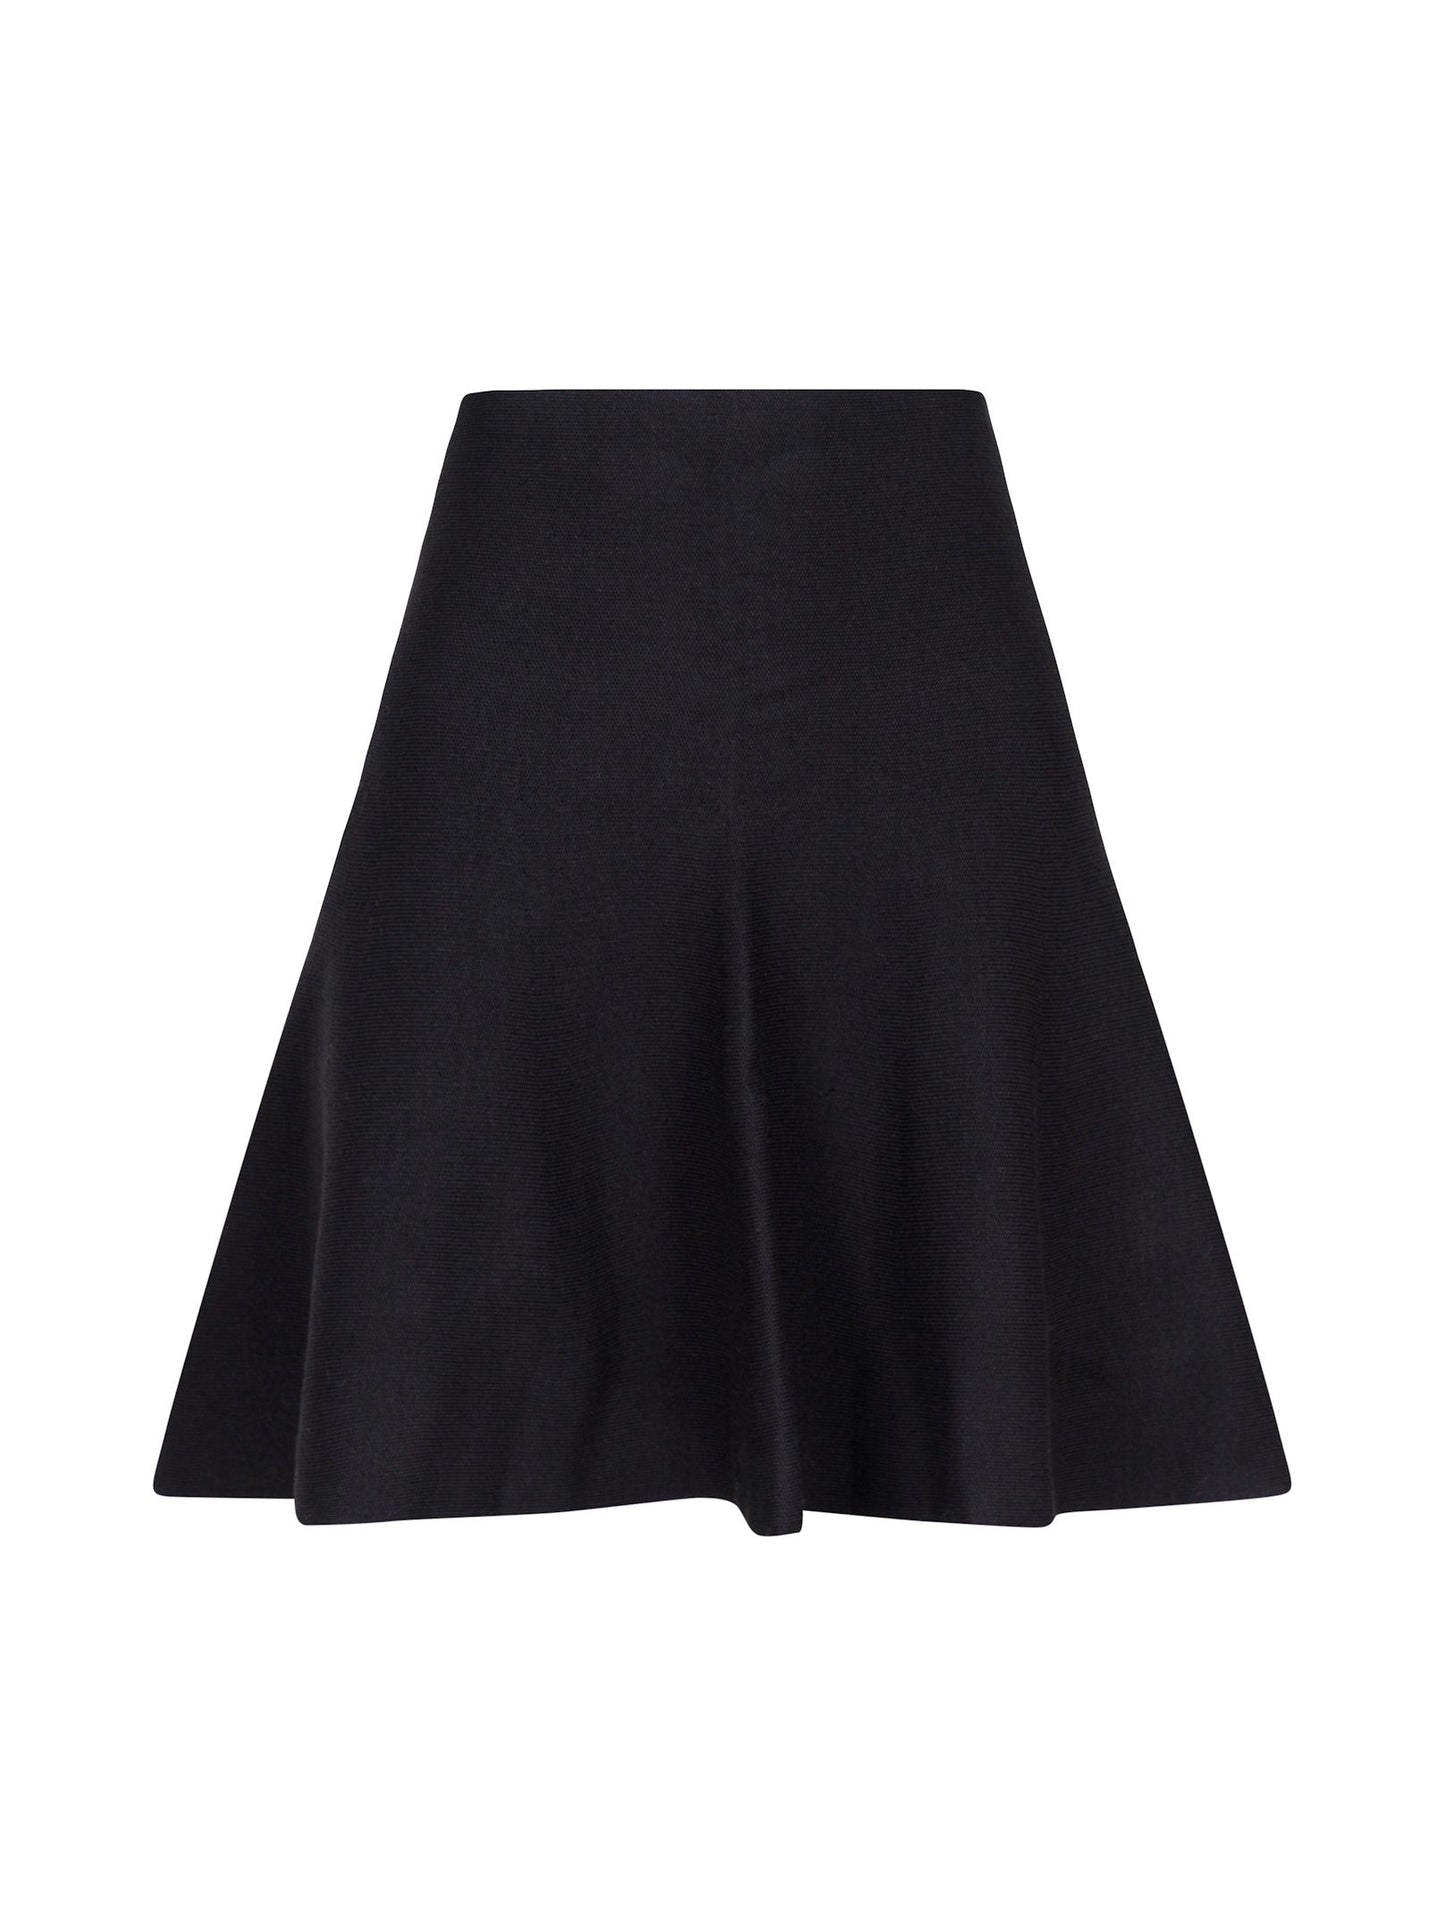 Hanna Knit Skirt